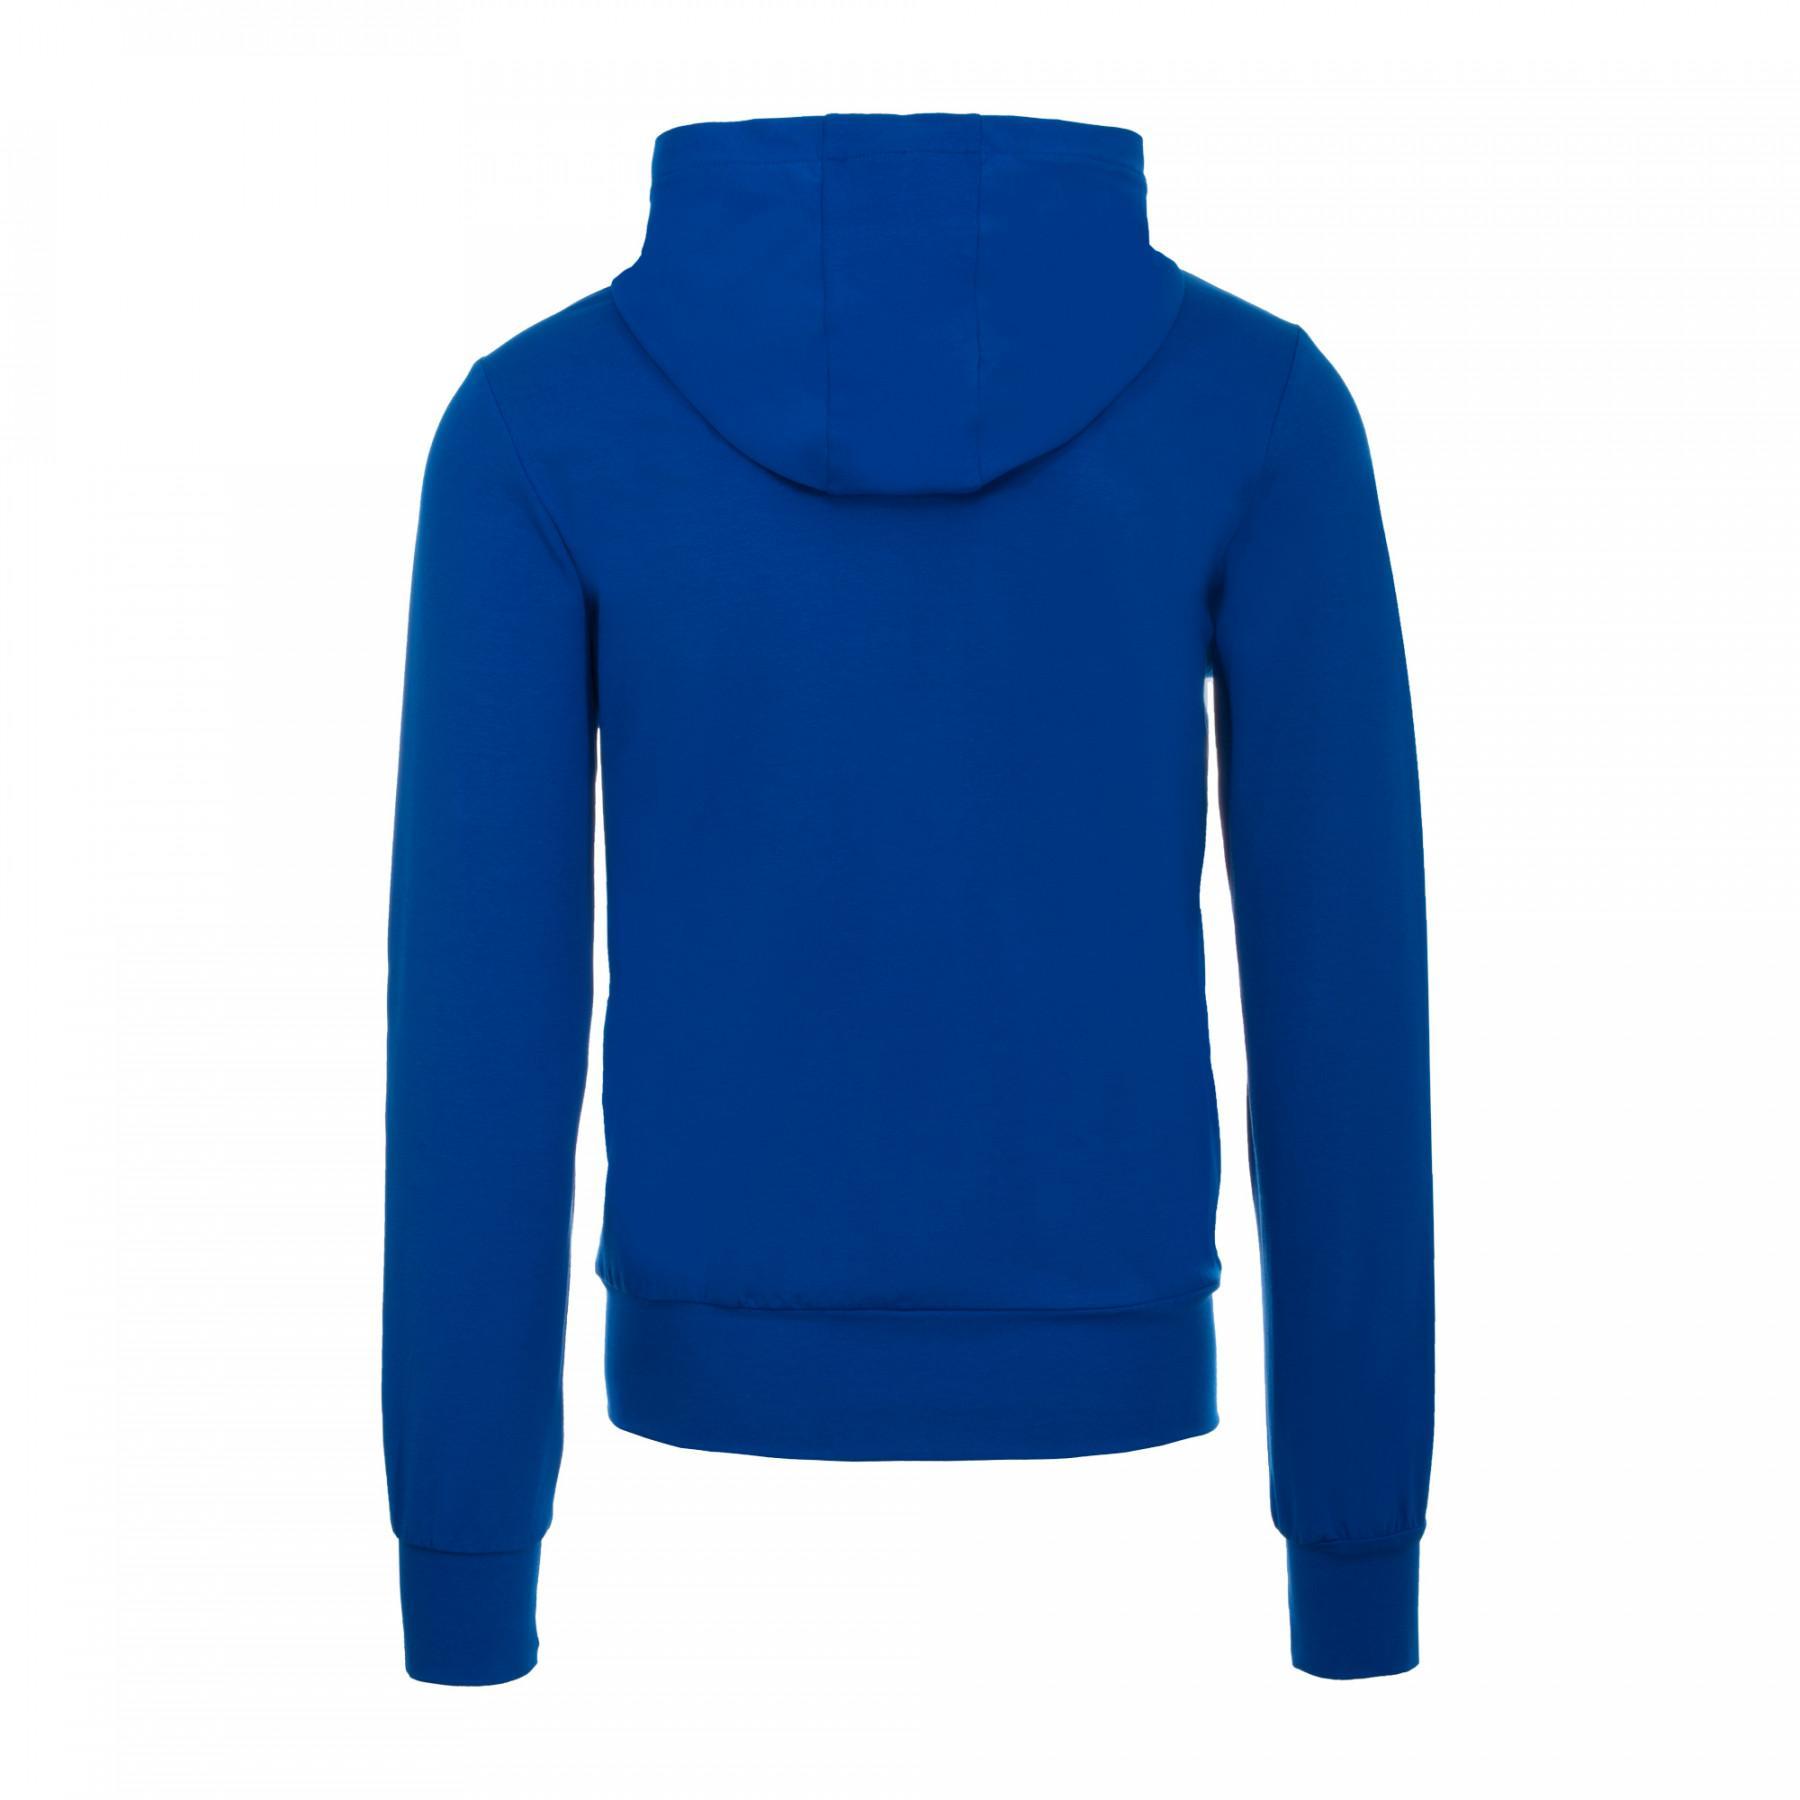 Zip-up sweatshirt Errea essential UK